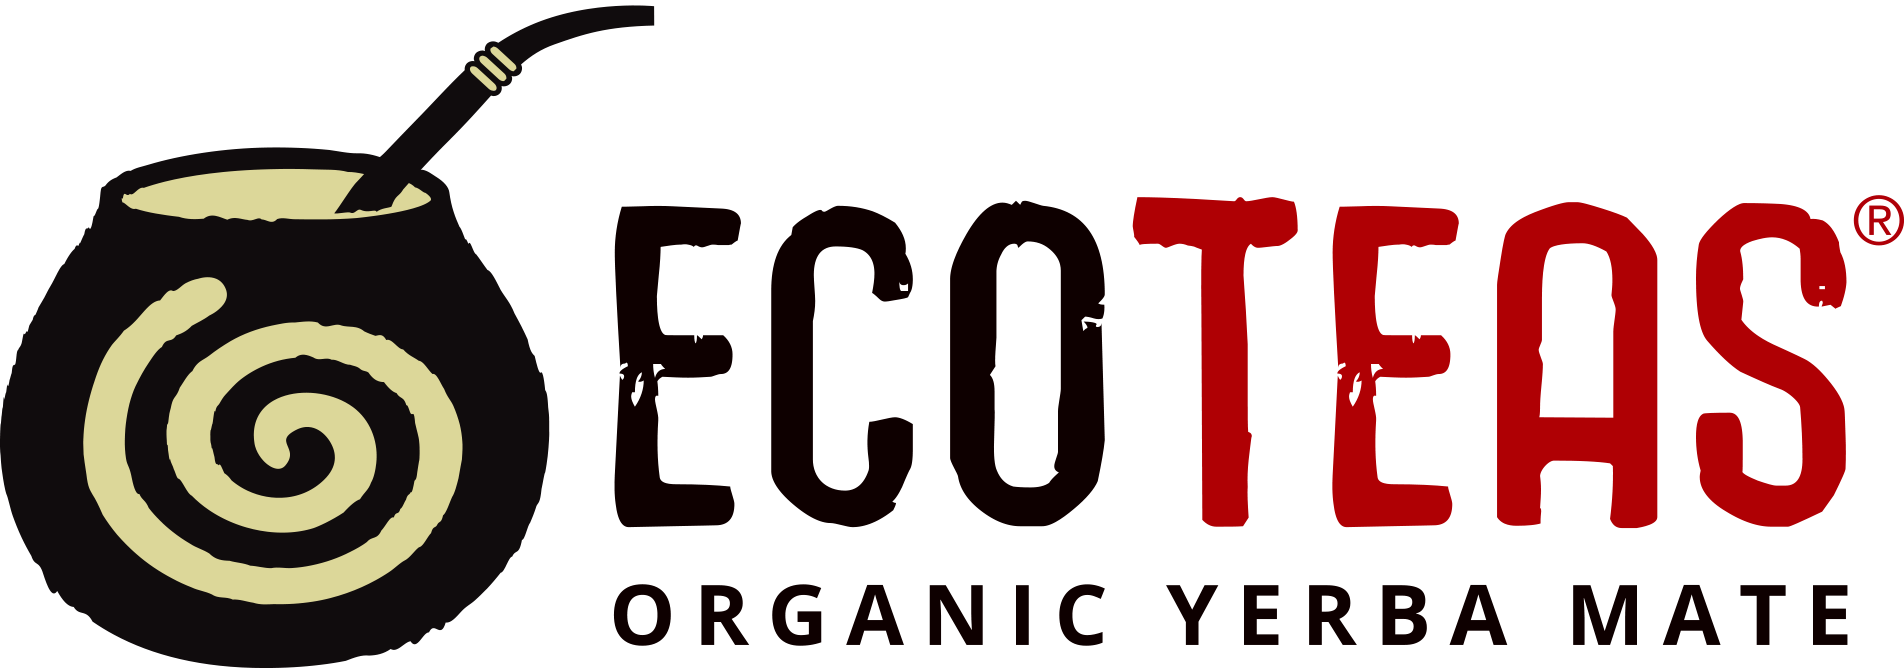 ECOTEAS logo